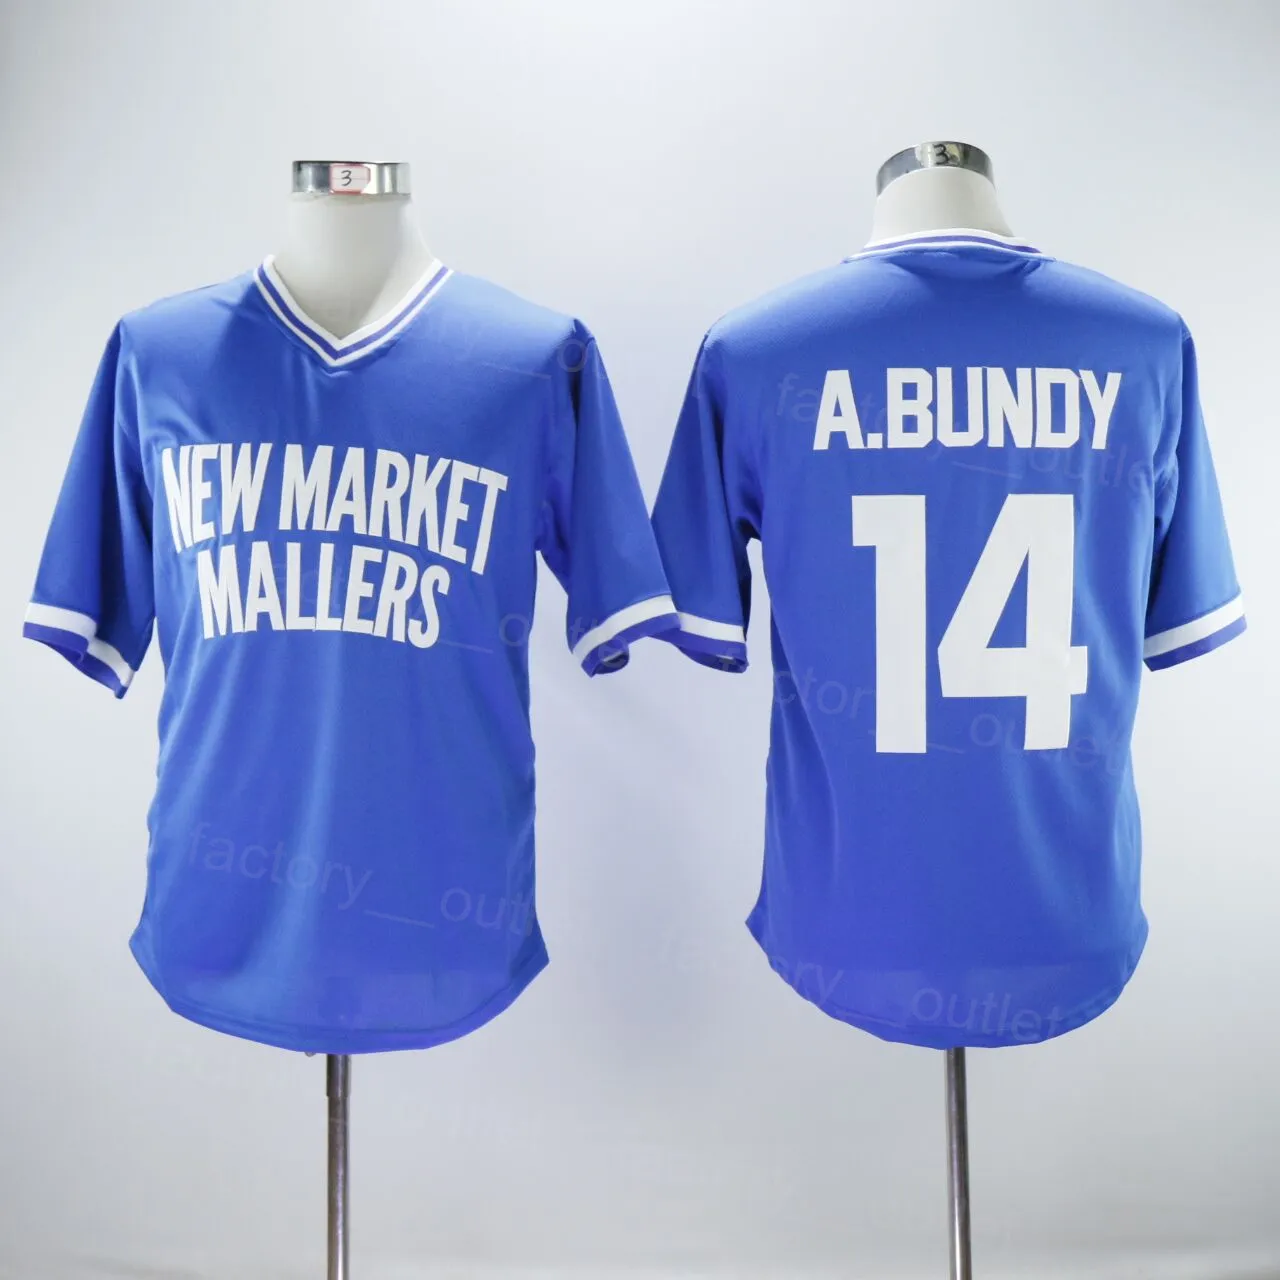 Erkekler Yeni Market Mallers 14 Al Bundy Beyzbol Jersey Takım Renk Mavi Tüm Spor Hayranları için Dikişli Hiphop Hiphop Serin Base Hip Hop Üst Kalite Satış Boyutu S-XXXL